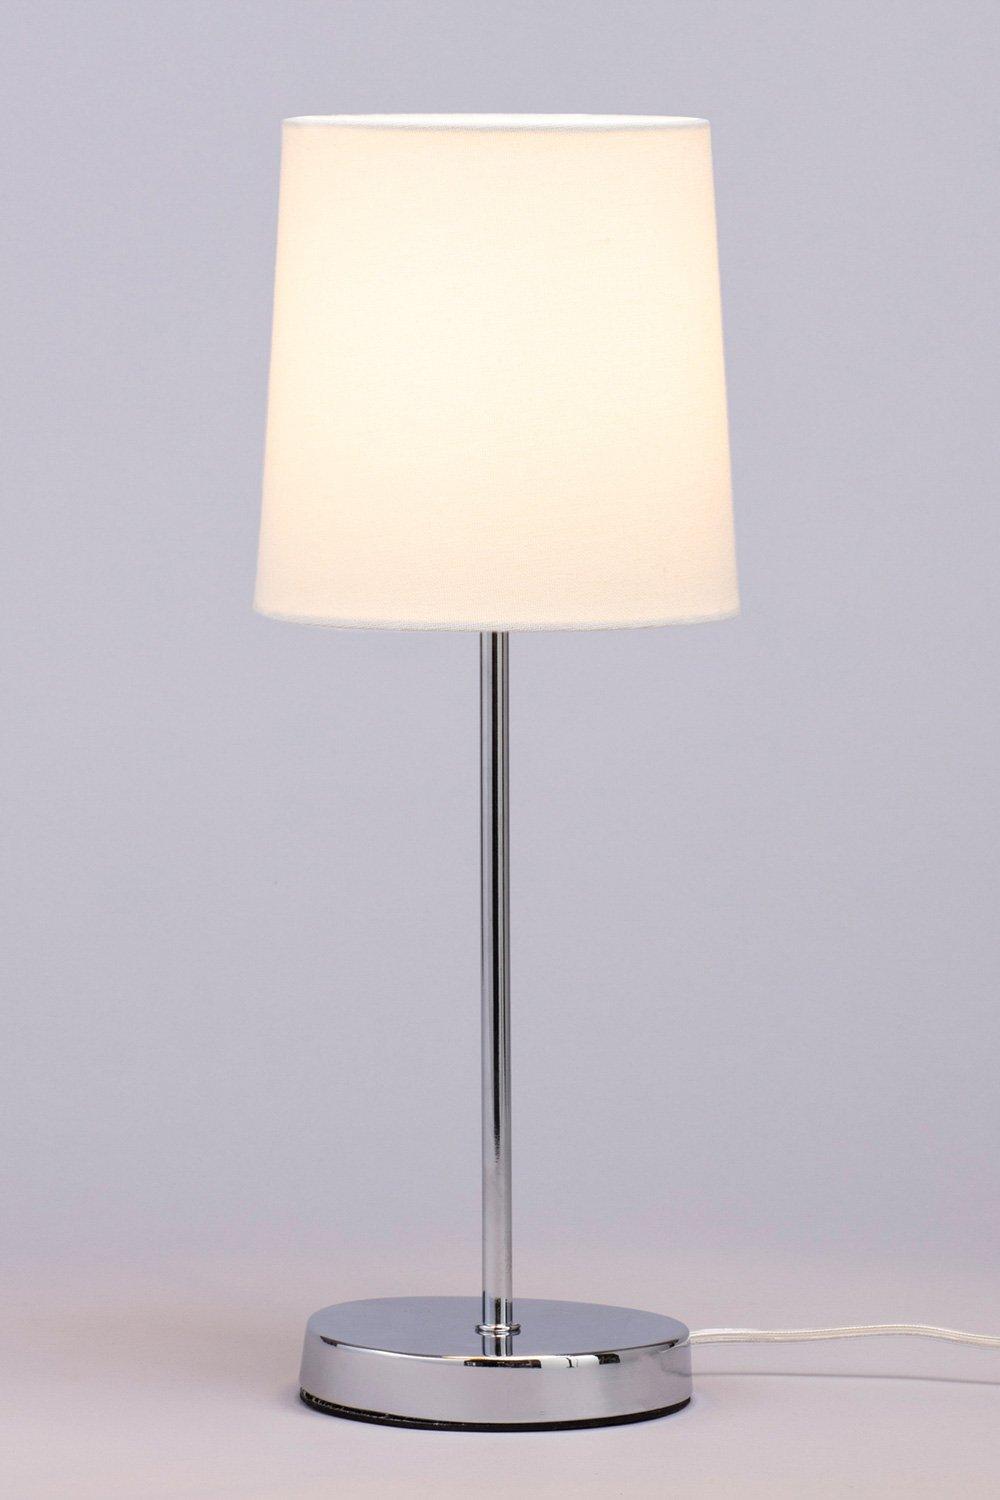 Table Lamps Debenhams, Macy Table Lamp Debenhams